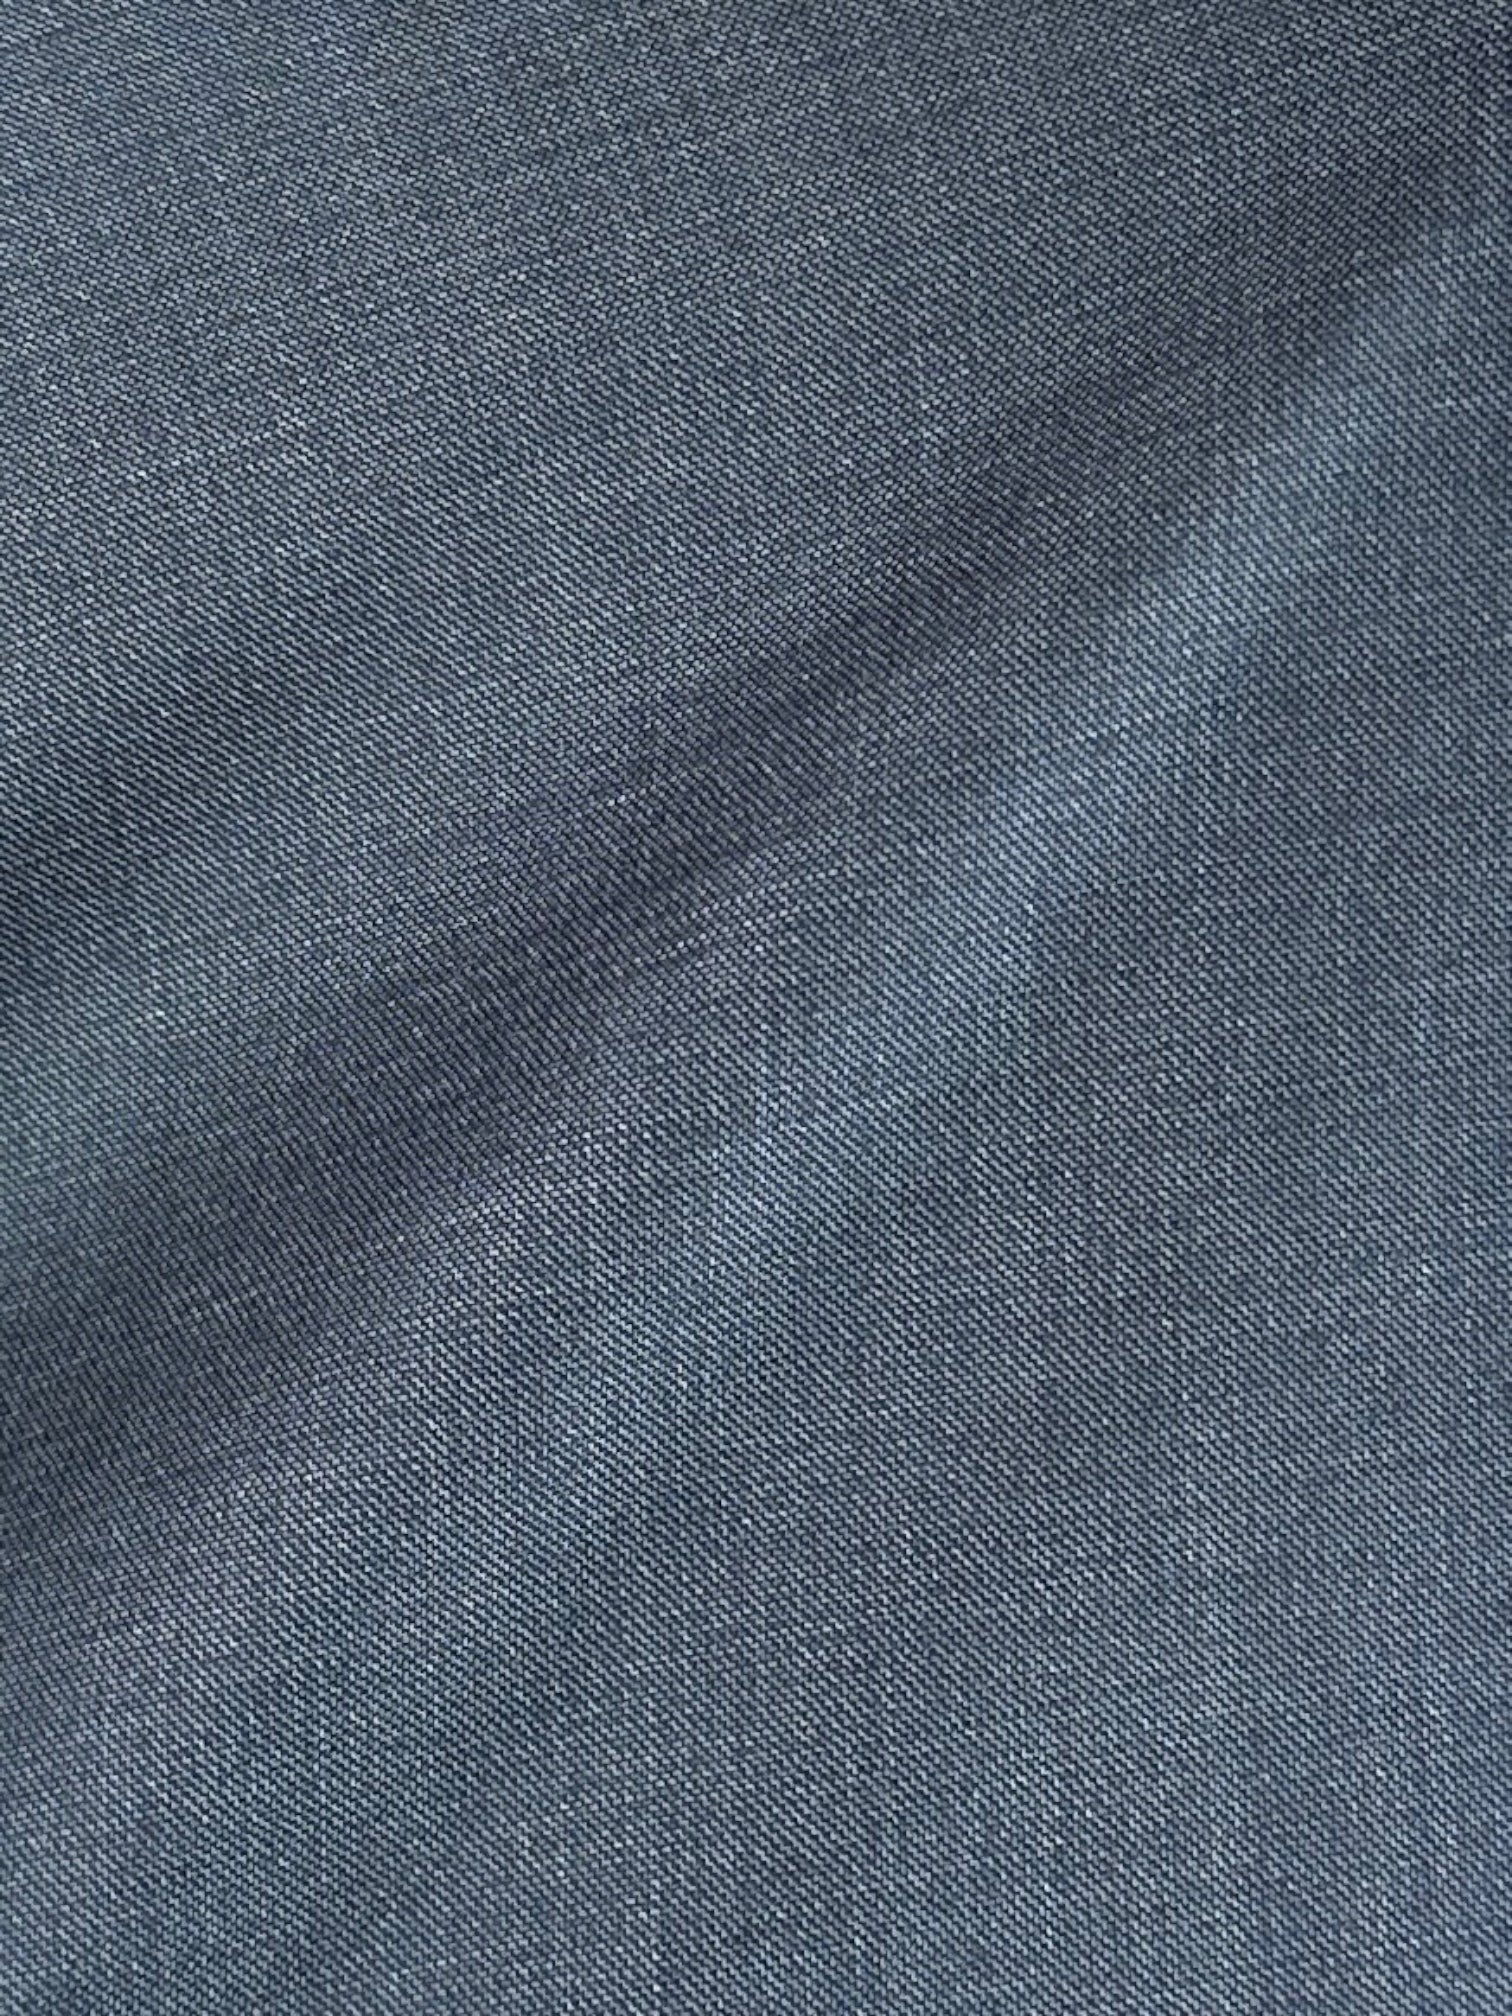 Cesare Attolini Steel Blue S170's & Silk Suit